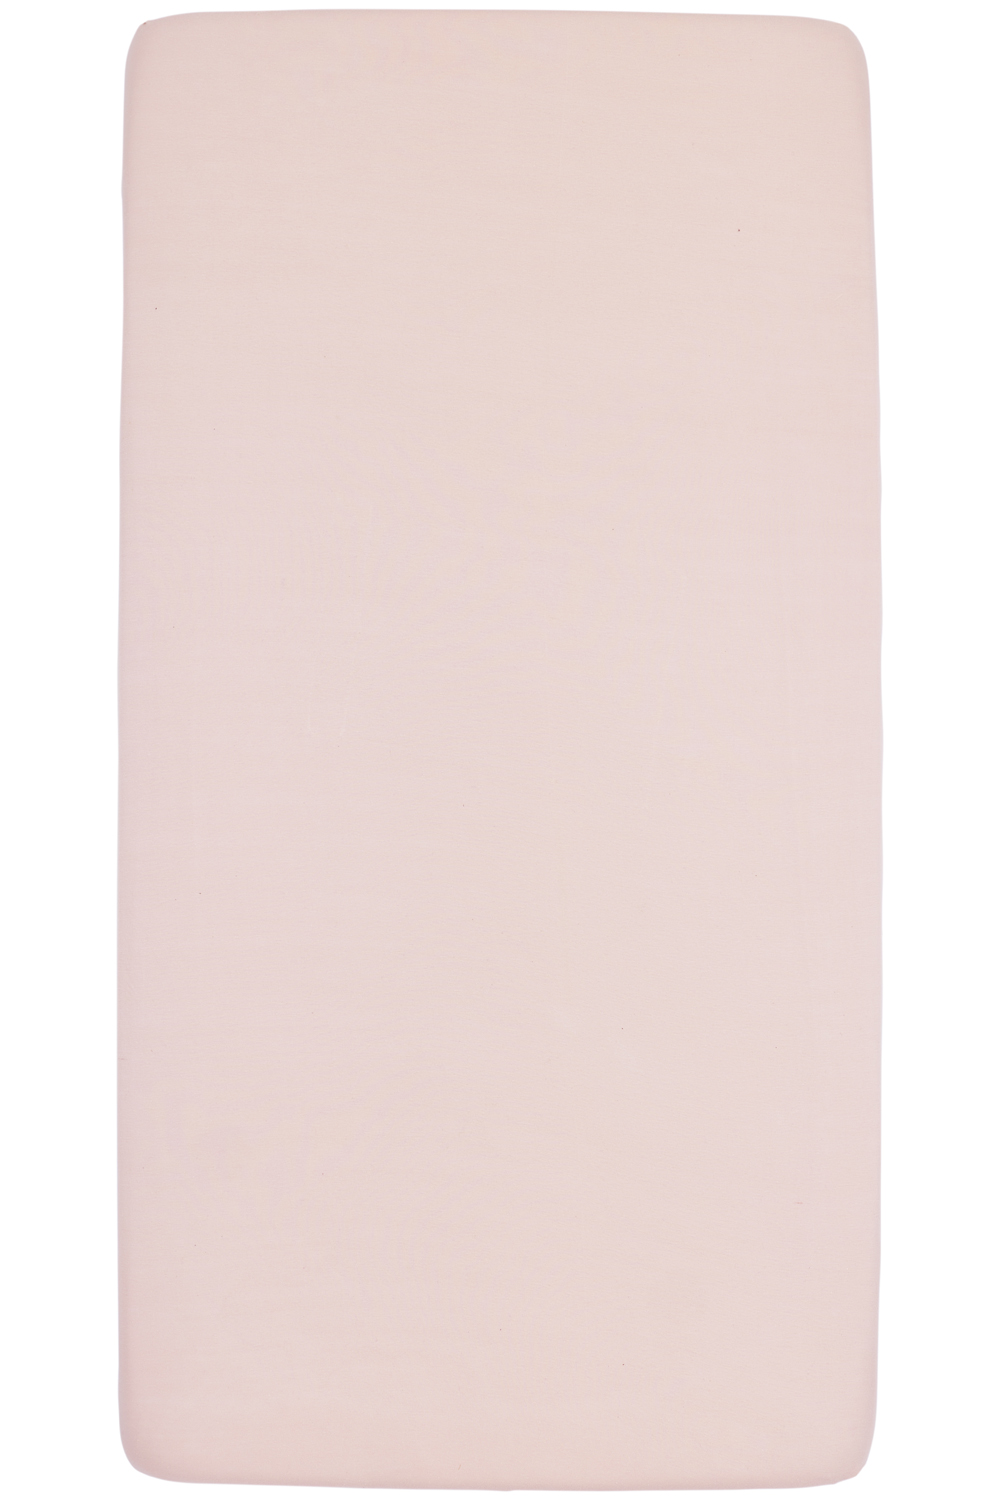 Spannbettlaken Laufgittermatratze Uni - soft pink - 75x95cm